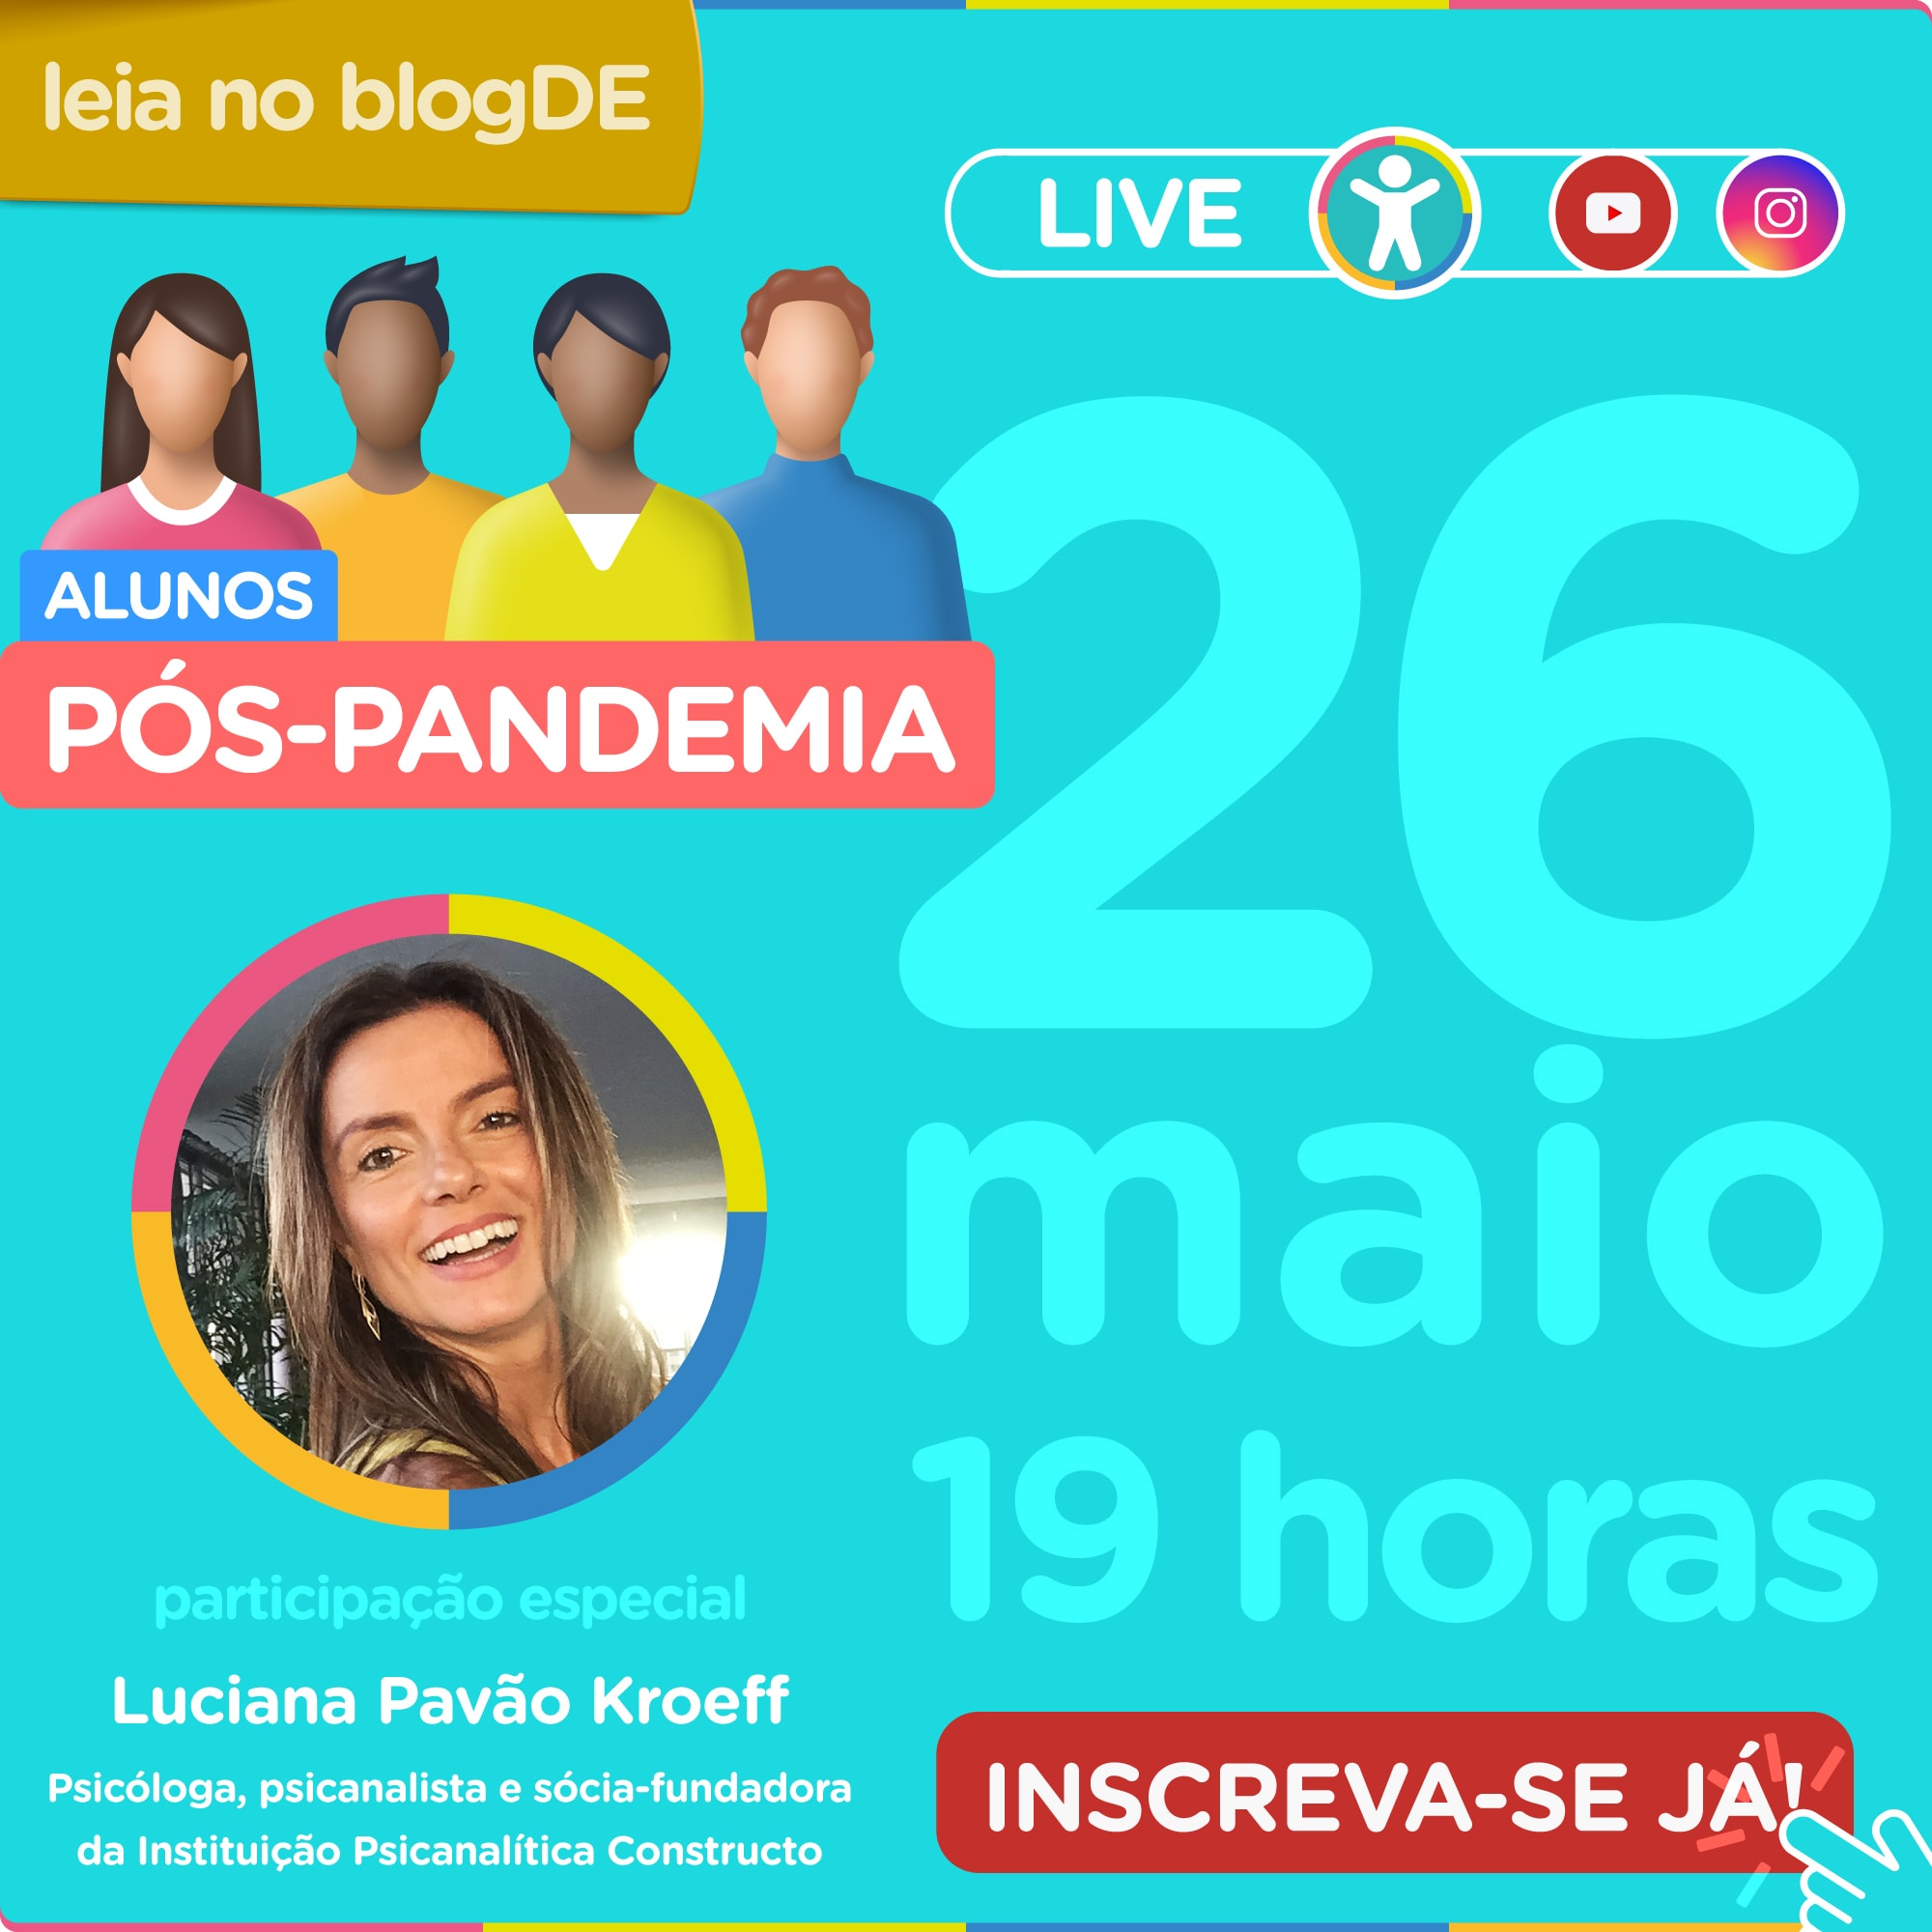 Alunos pós-pandemia: live do superApp Diário Escola